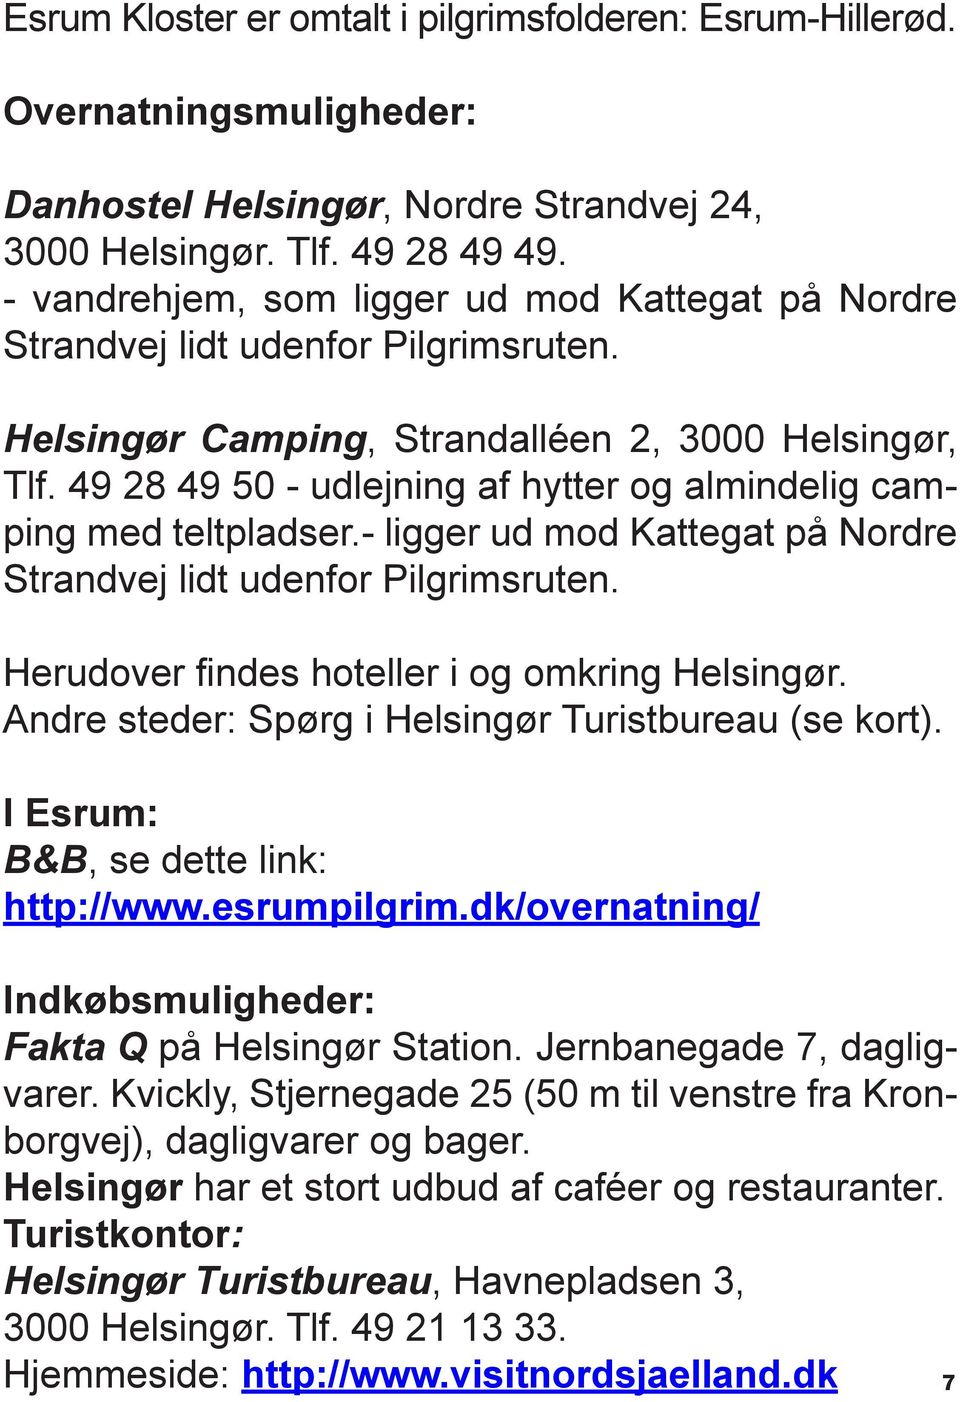 49 28 49 50 - udlejning af hytter og almindelig camping med teltpladser.- ligger ud mod Kattegat på Nordre Strandvej lidt udenfor Pilgrimsruten. Herudover findes hoteller i og omkring Helsingør.